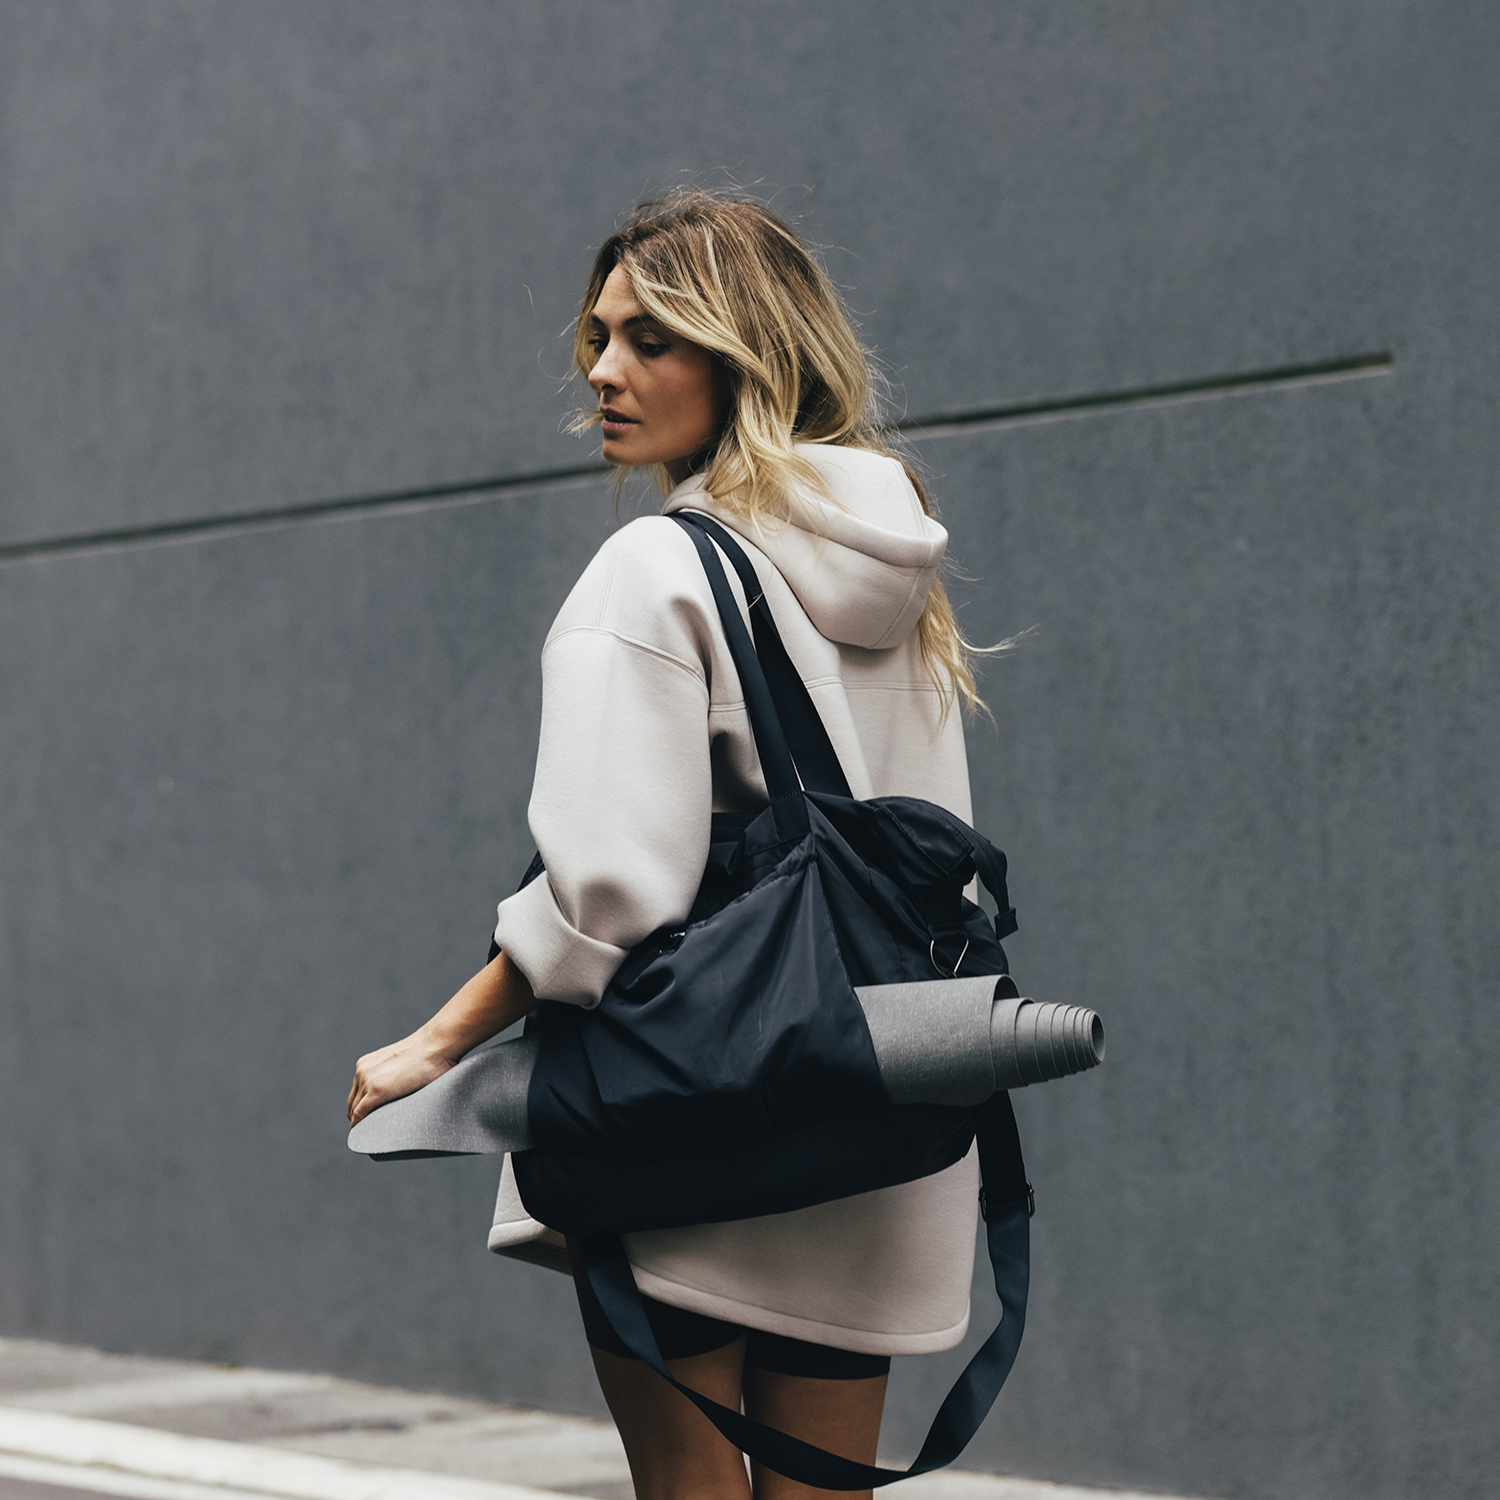 Nylon Gym Bags Lady's Fitness Yoga Bag Handbags Travel Bag Purse